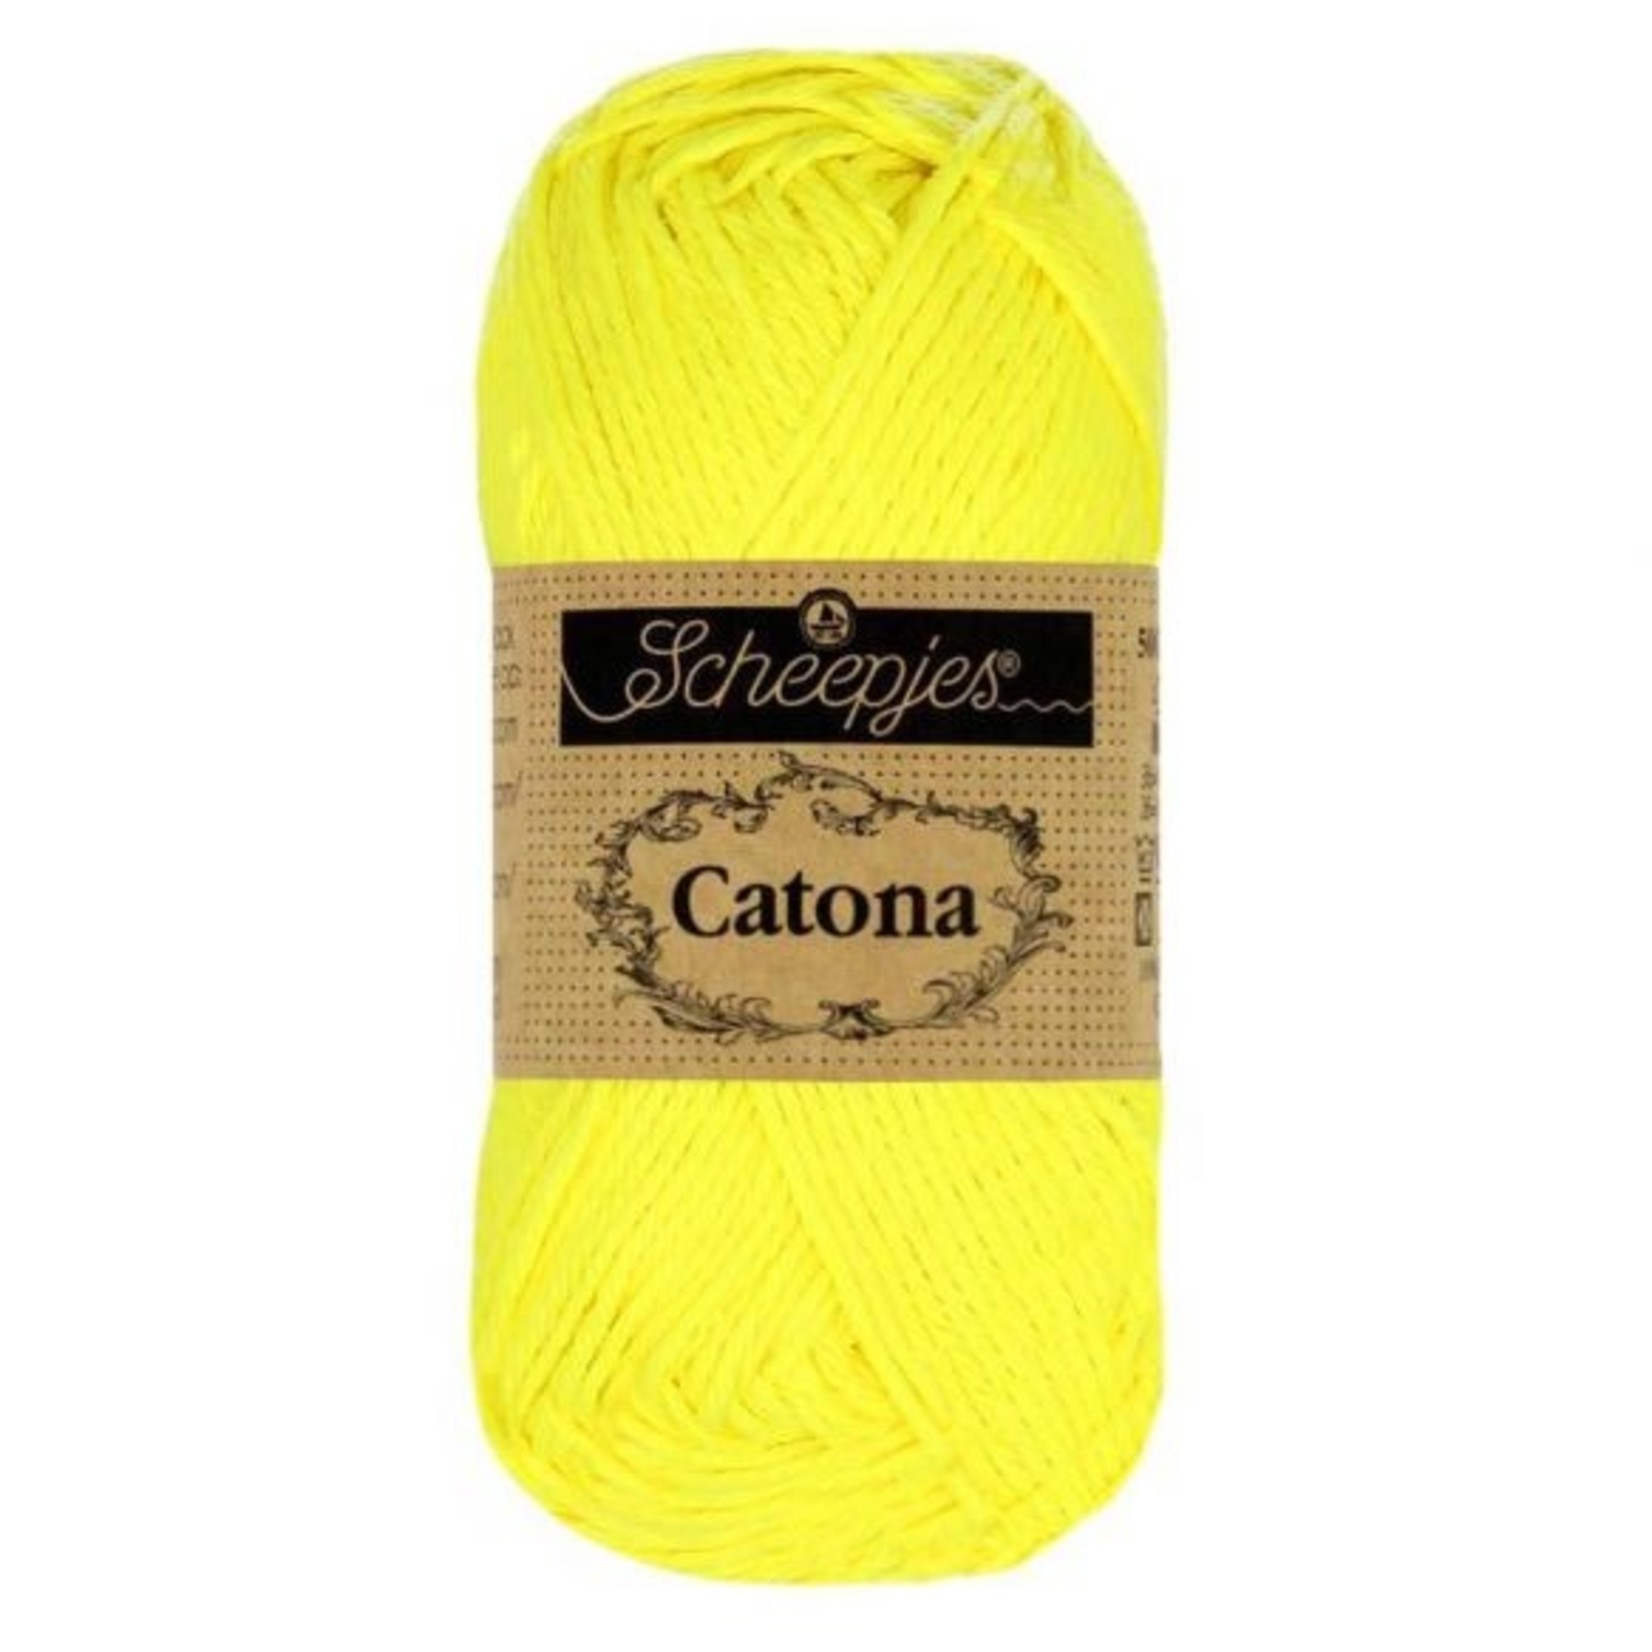 Scheepjes Catona 25 601 Neon Yellow